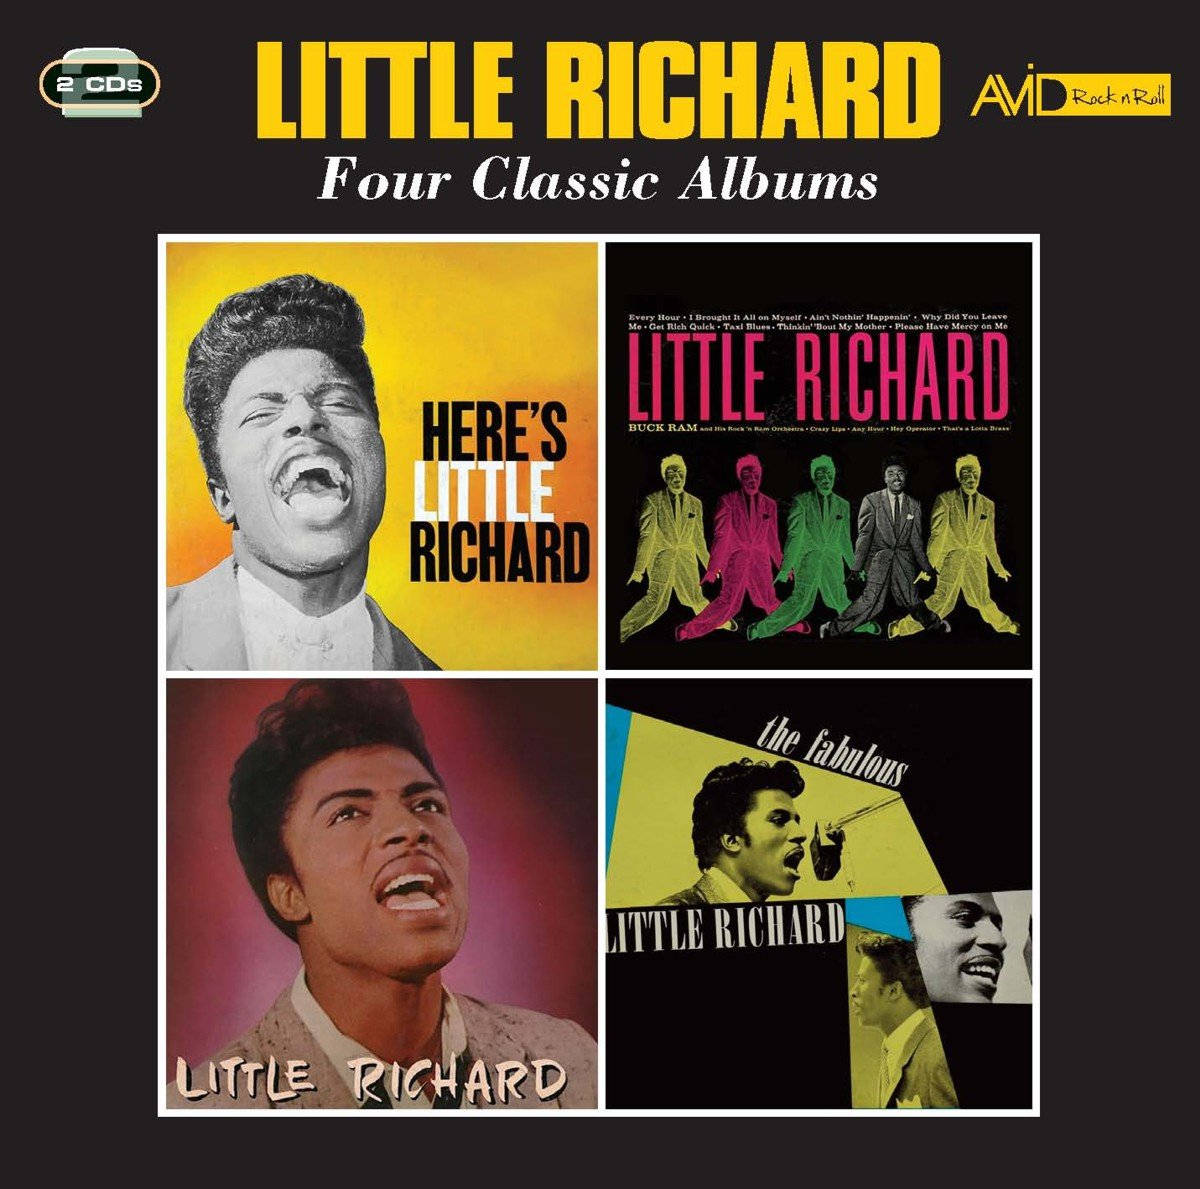 Little Richard Four Classic Albums Wallpaper